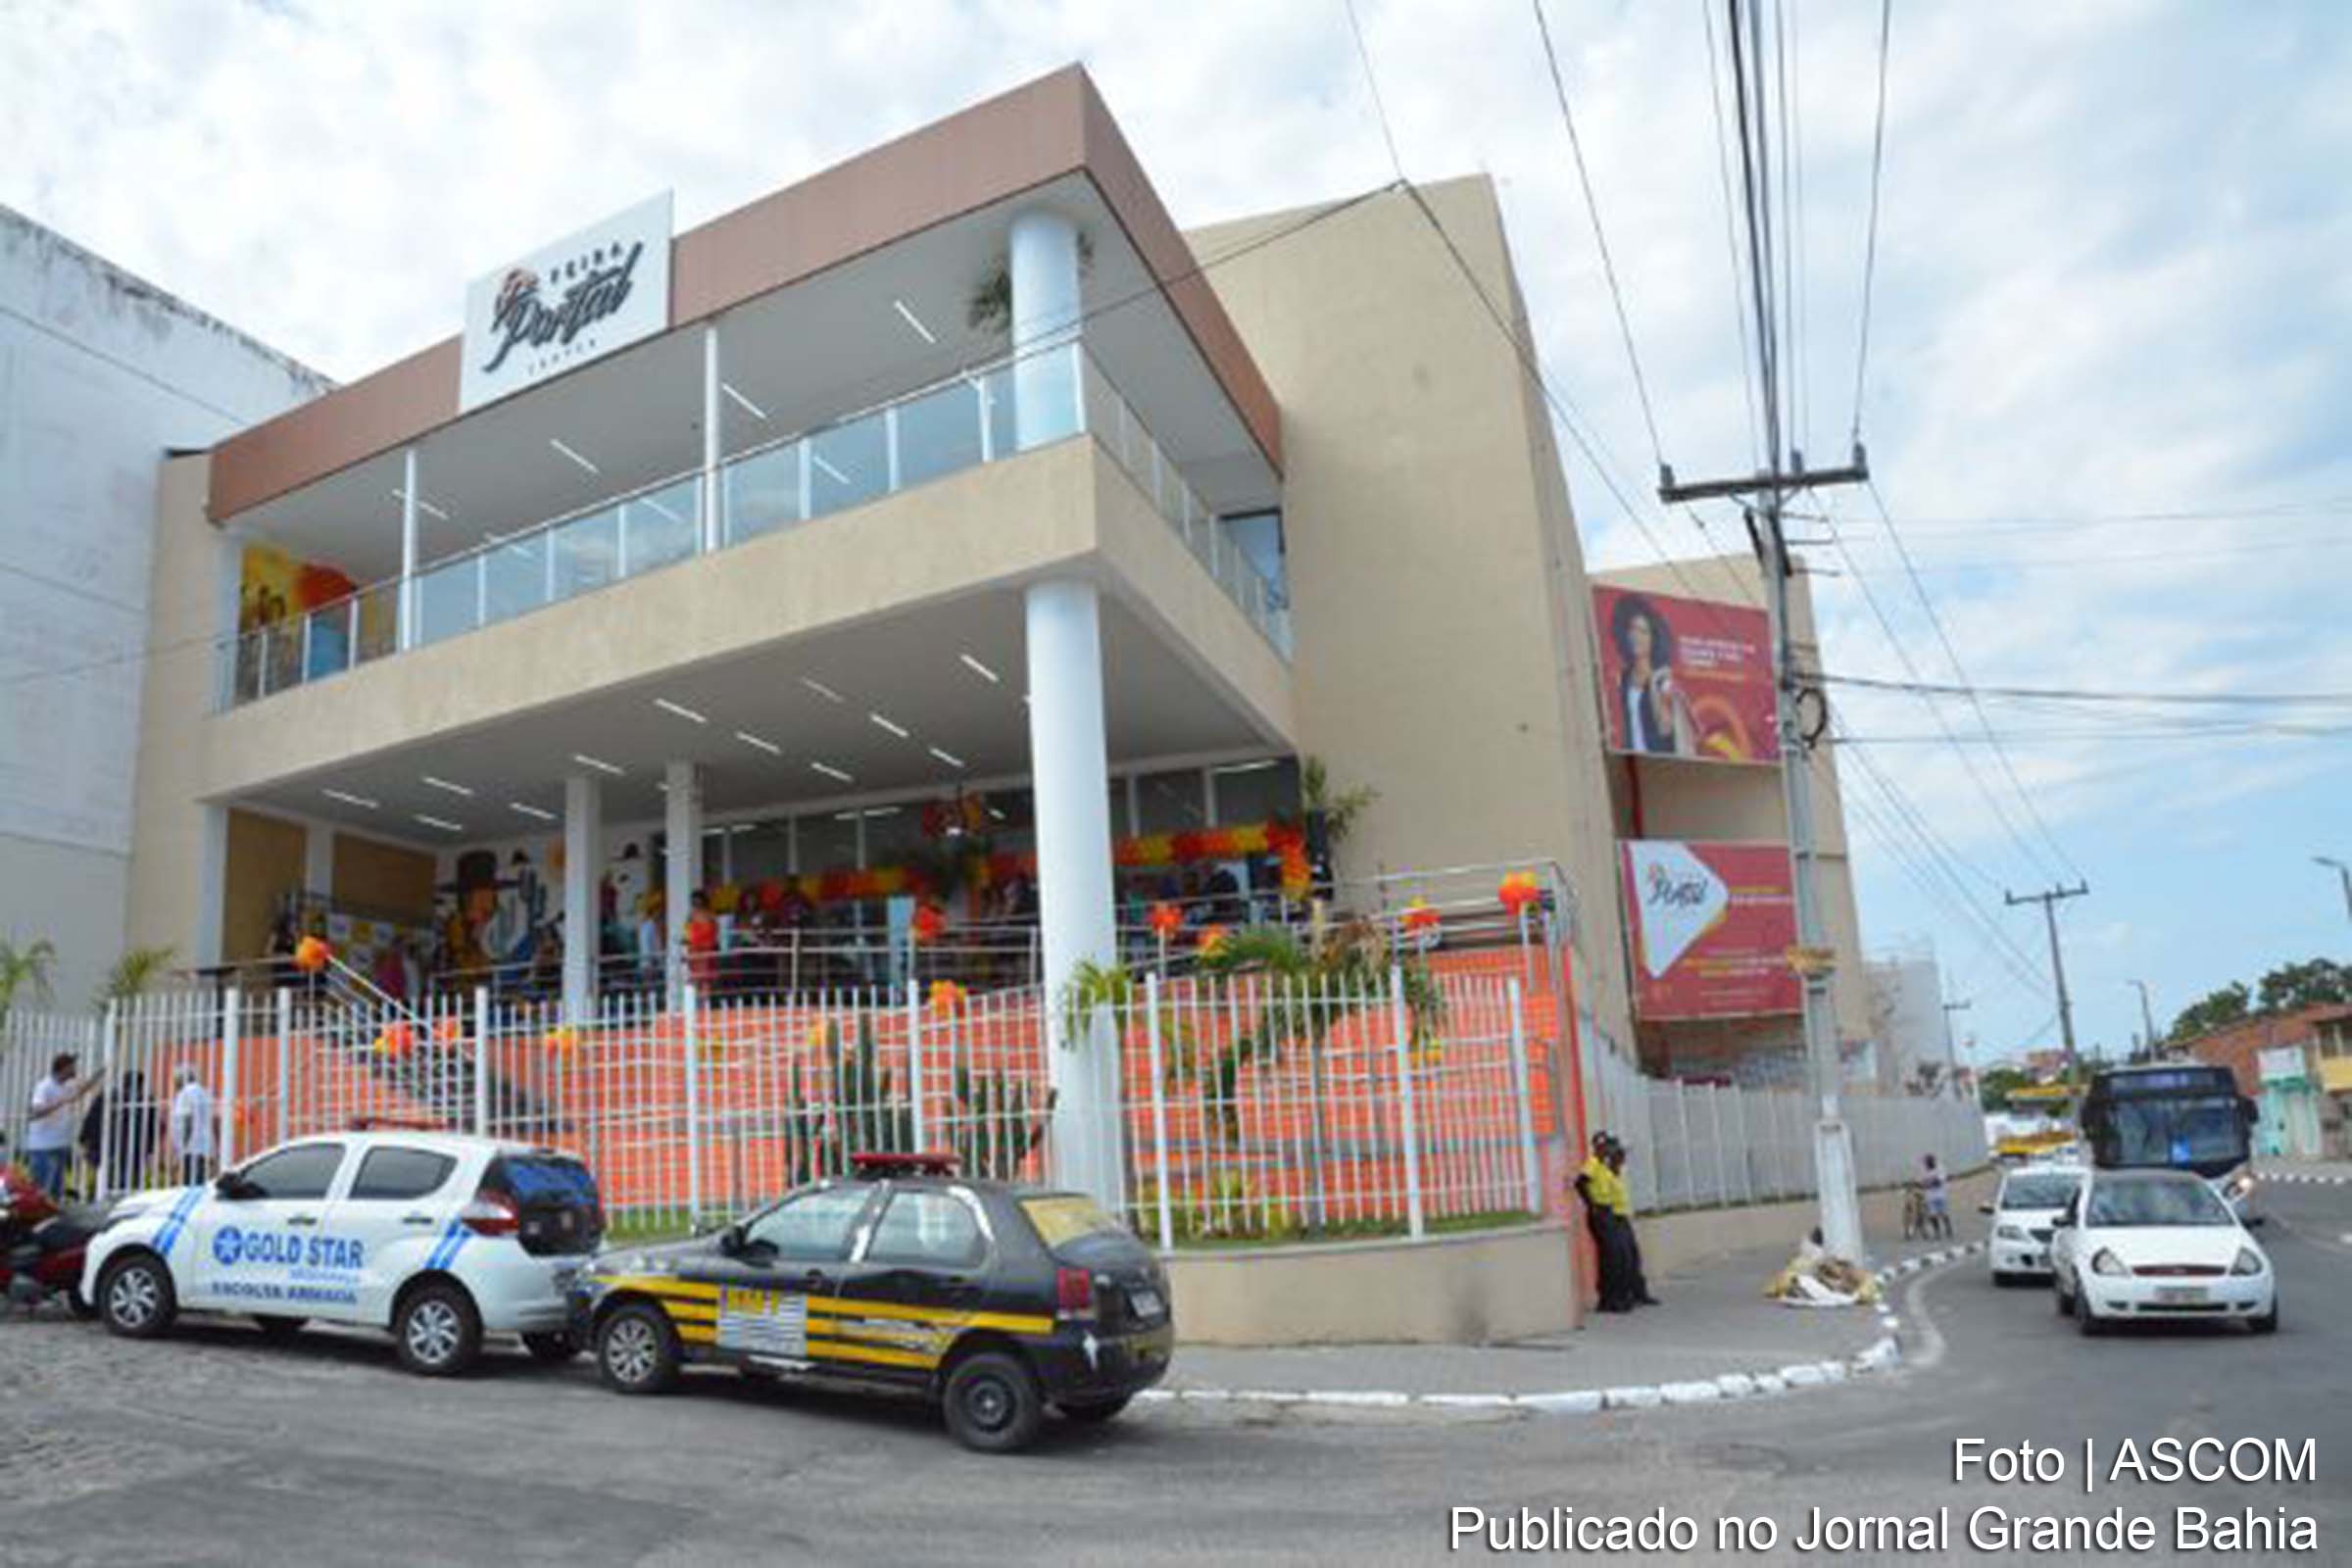 Novo Shopping Center Pretende Gerar 900 Empregos Diretos Em Feira De